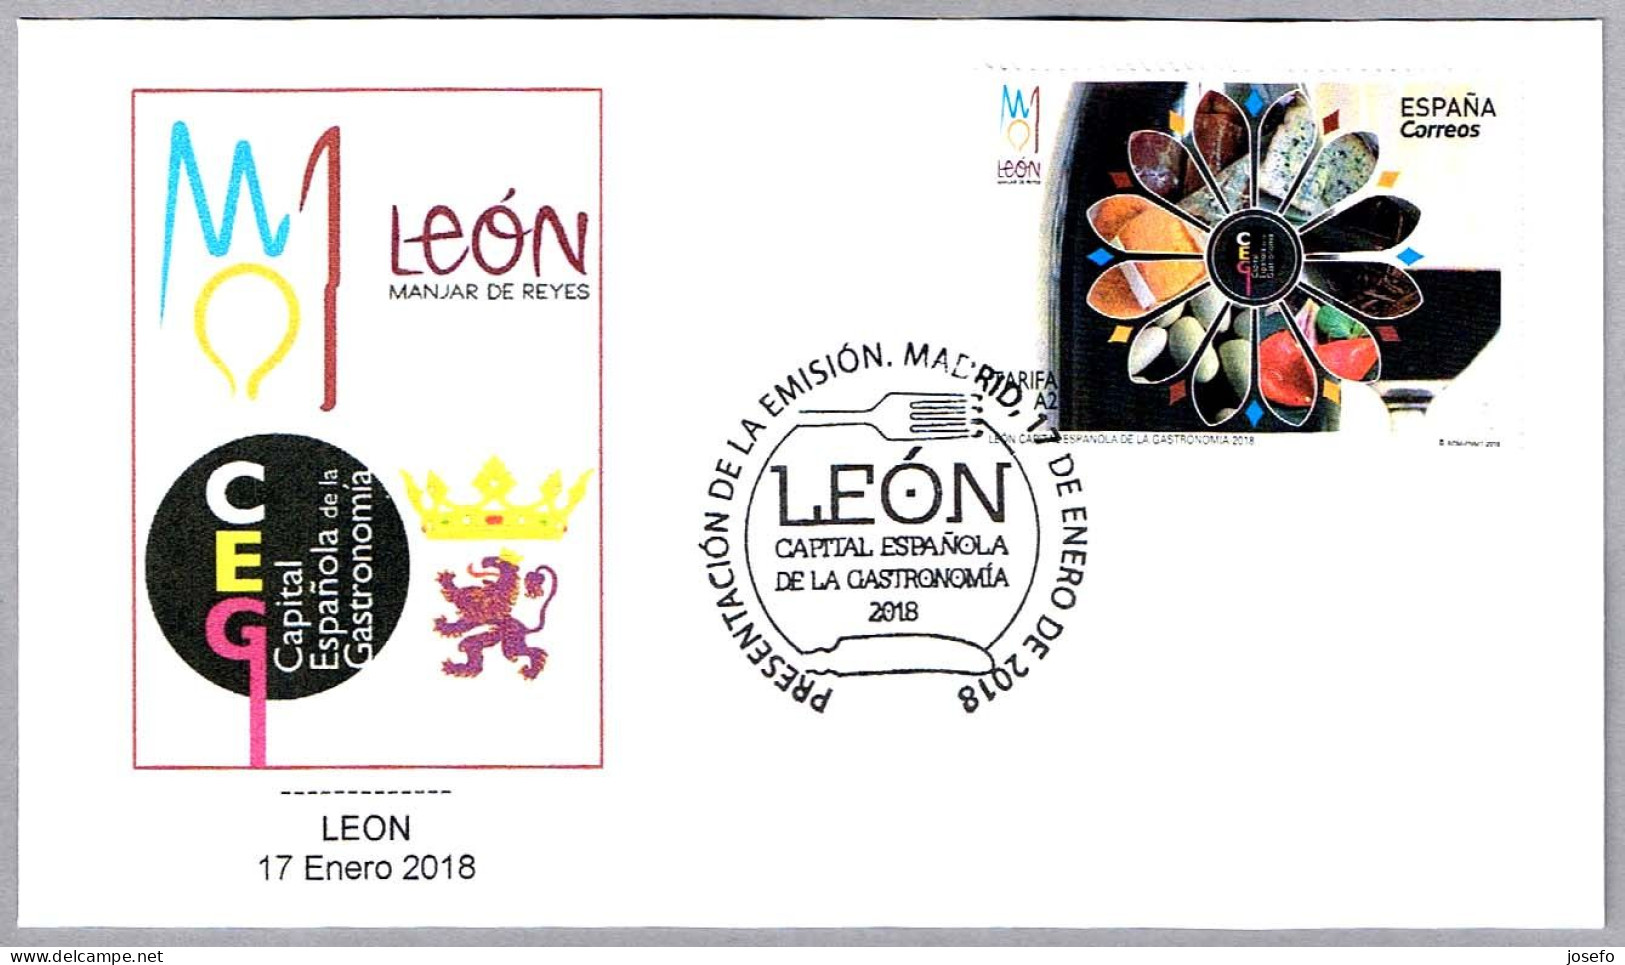 LEON CAPITAL ESPAÑOLA DE LA GASTRONOMIA 2018 - Gastronomy. Leon 2018 - Alimentation